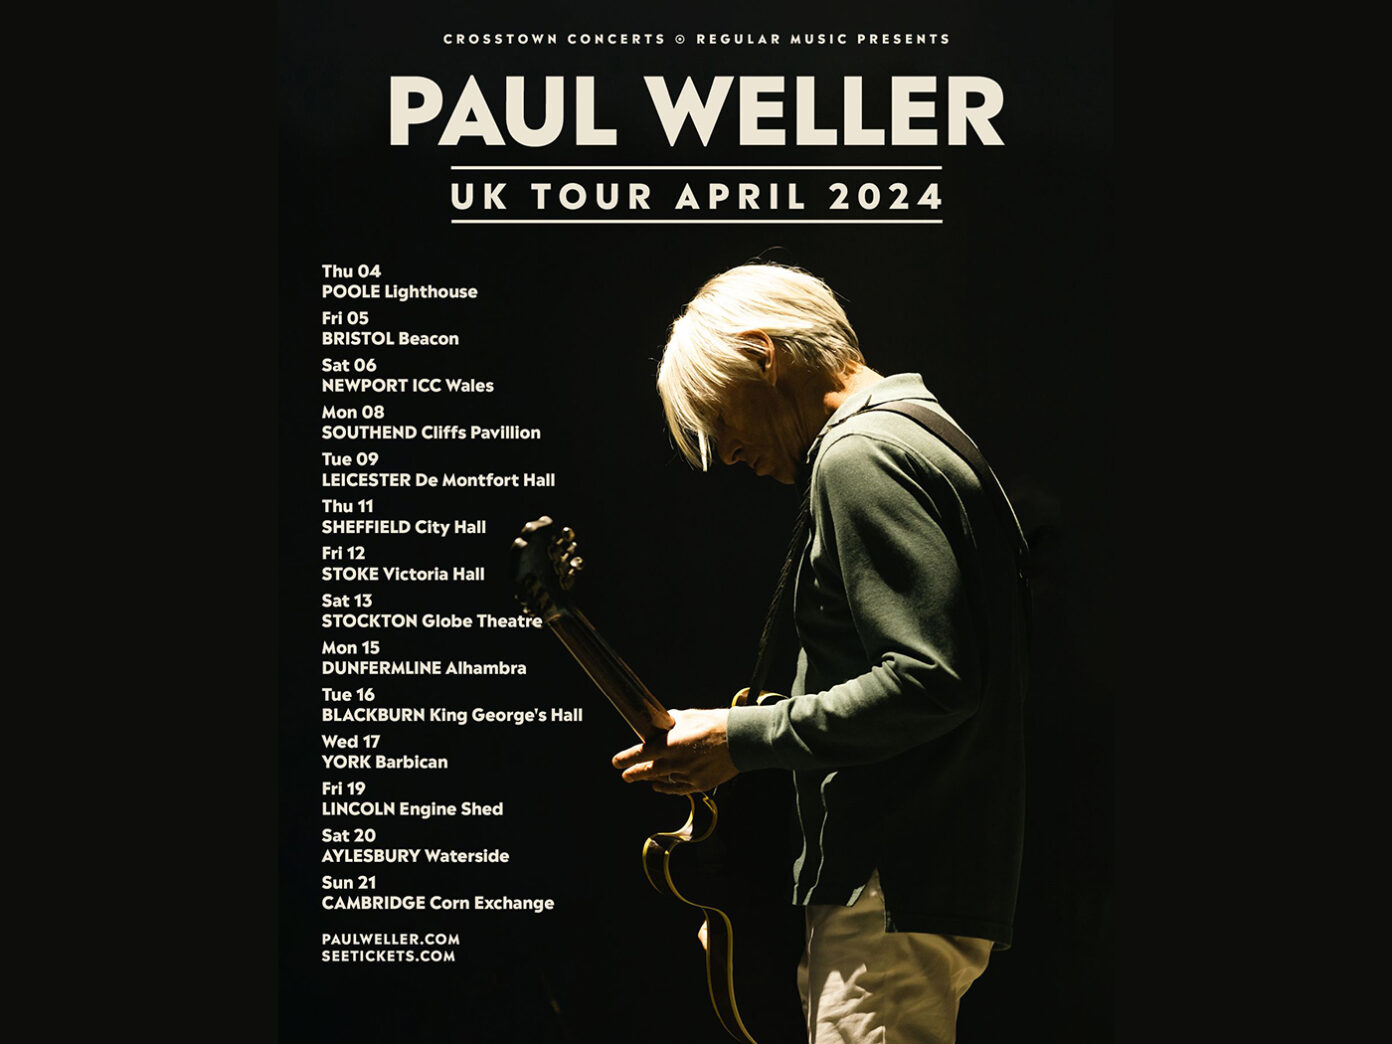 Paul Weller announces tour dates for 2024 UNCUT